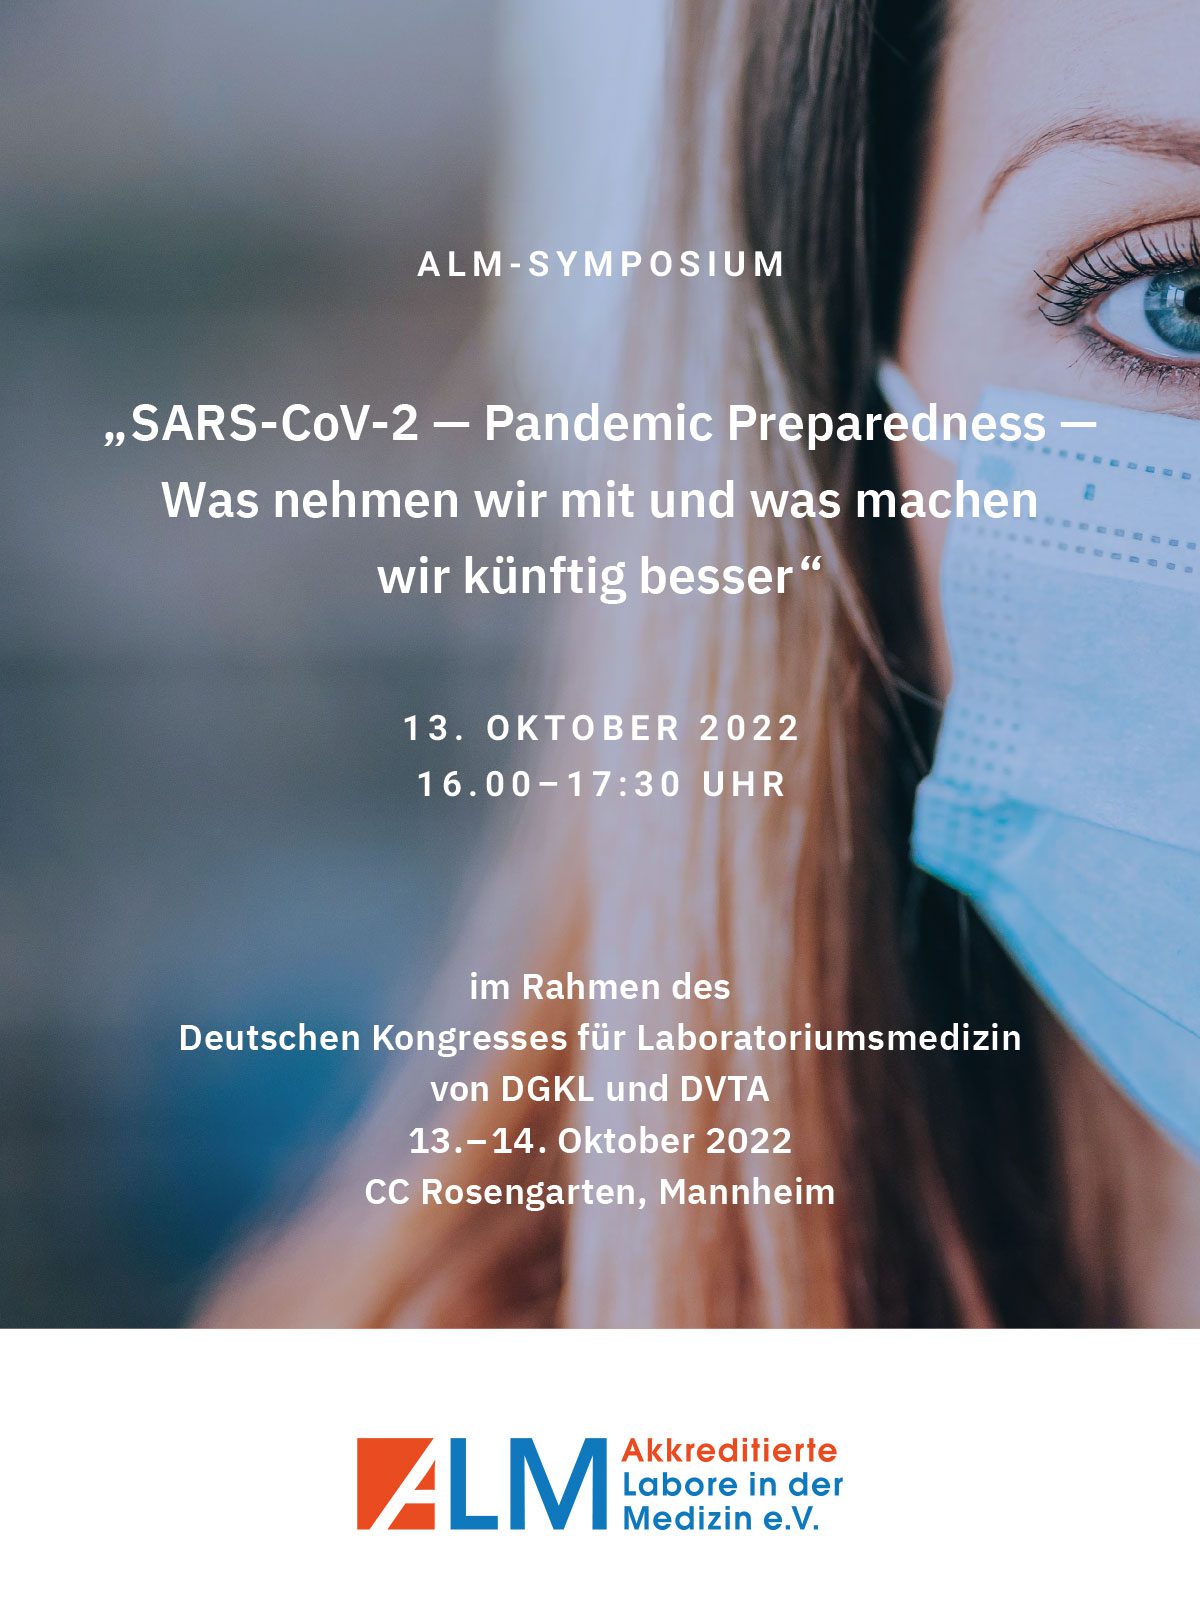 ALM-Symposium: „SARS-CoV-2 — Pandemic Preparedness — Was nehmen wir mit und was machen wir künftig besser“